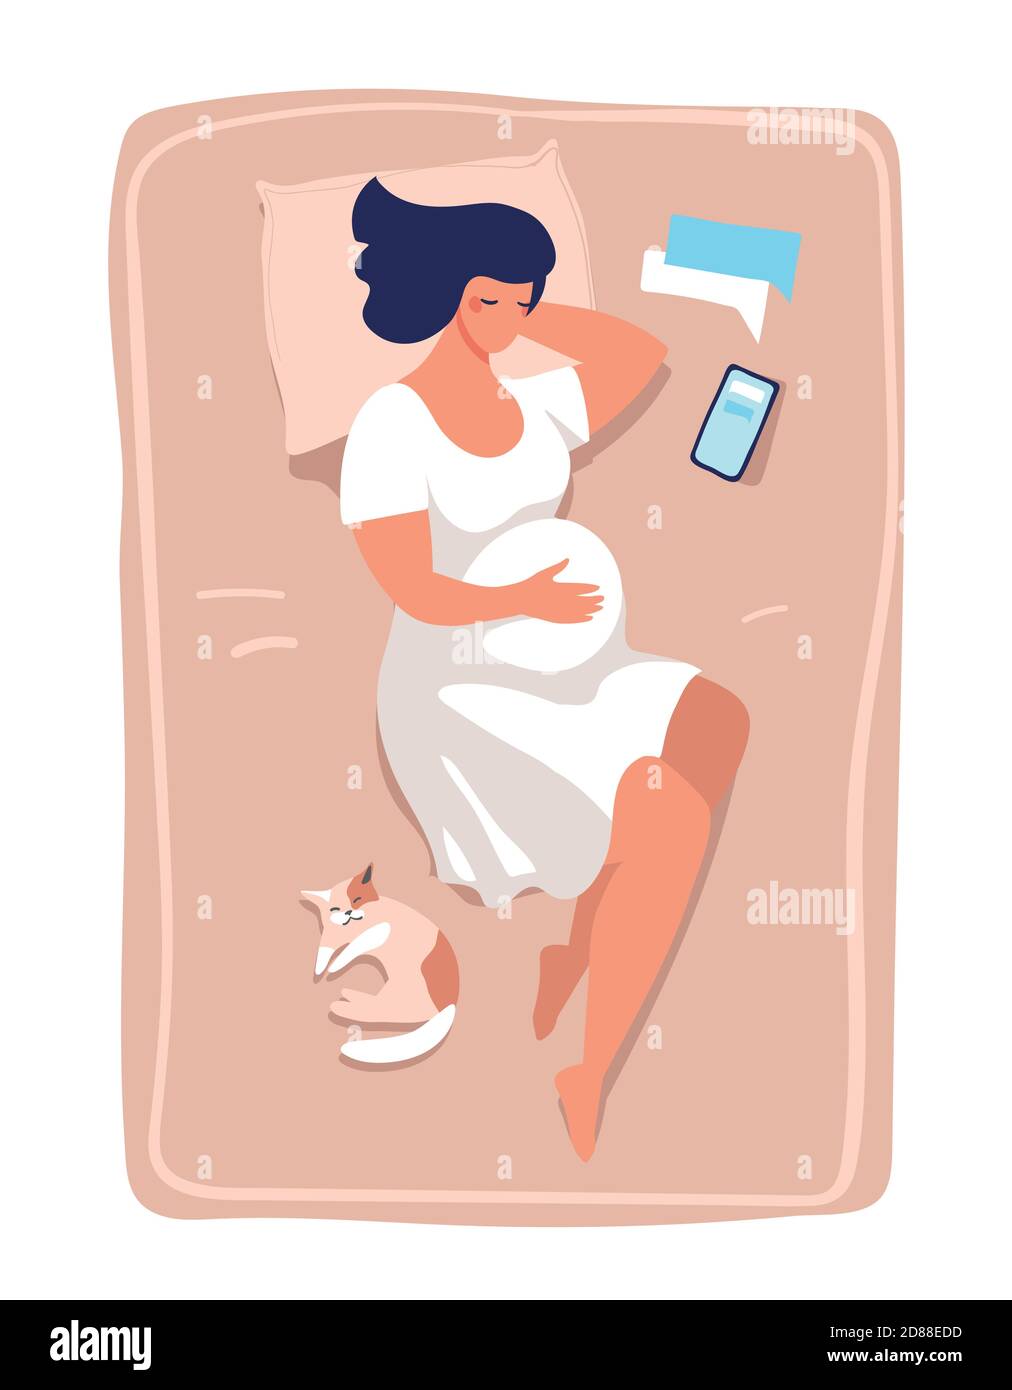 Una joven embarazada se acuesta y duerme en la cama. Ilustración sobre el embarazo y el parto, la salud y la relajación. Ilustración de vector plano aislada sobre fondo blanco Ilustración del Vector